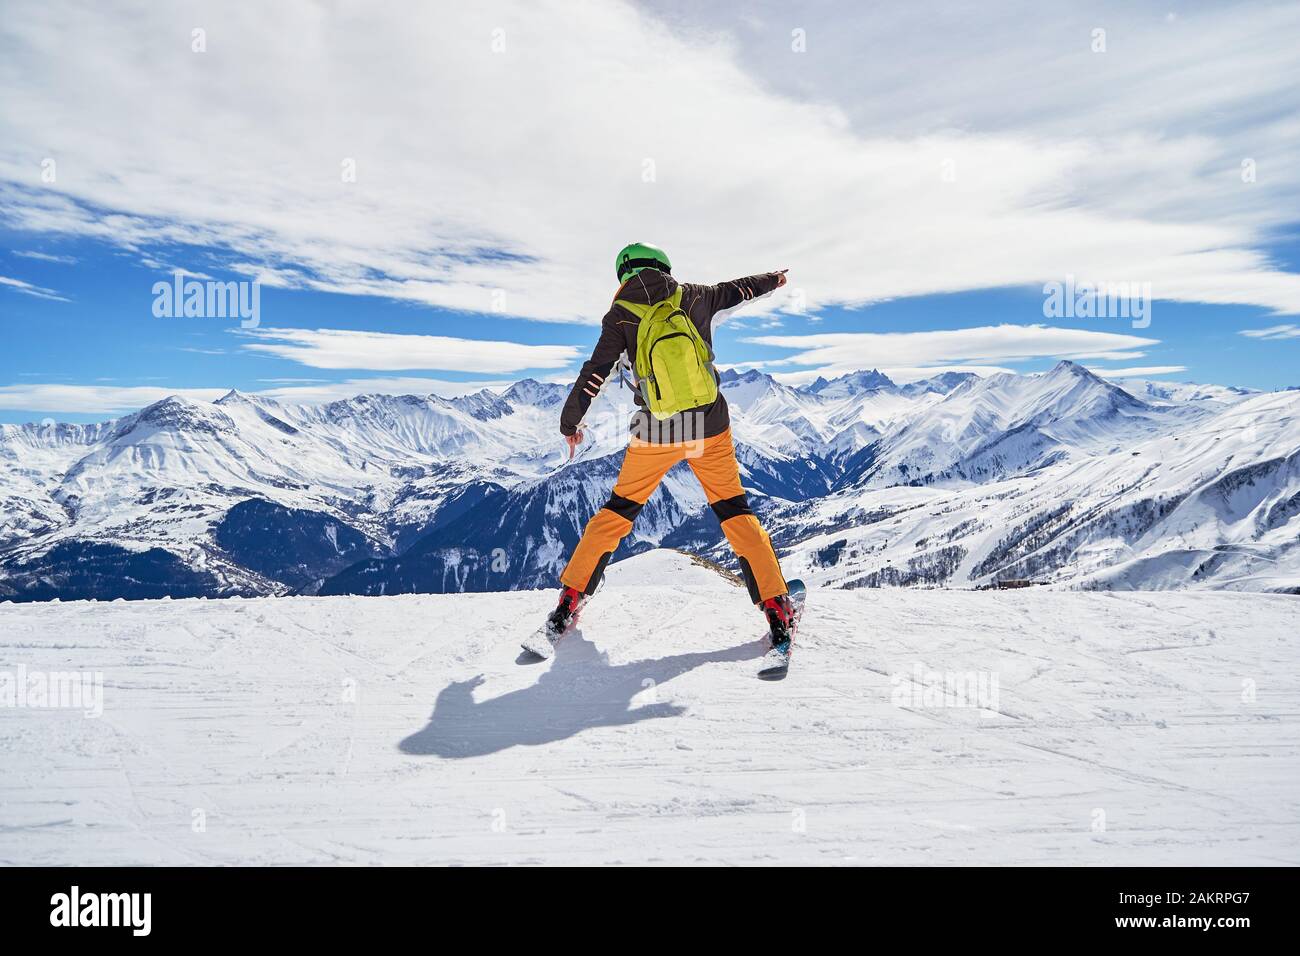 Lo sciatore entusiasta indossa abiti colorati e uno zaino verde, che si posa su una pista da sci nella località sciistica di Les Sybelles, con le vette delle Alpi francesi sul retro Foto Stock